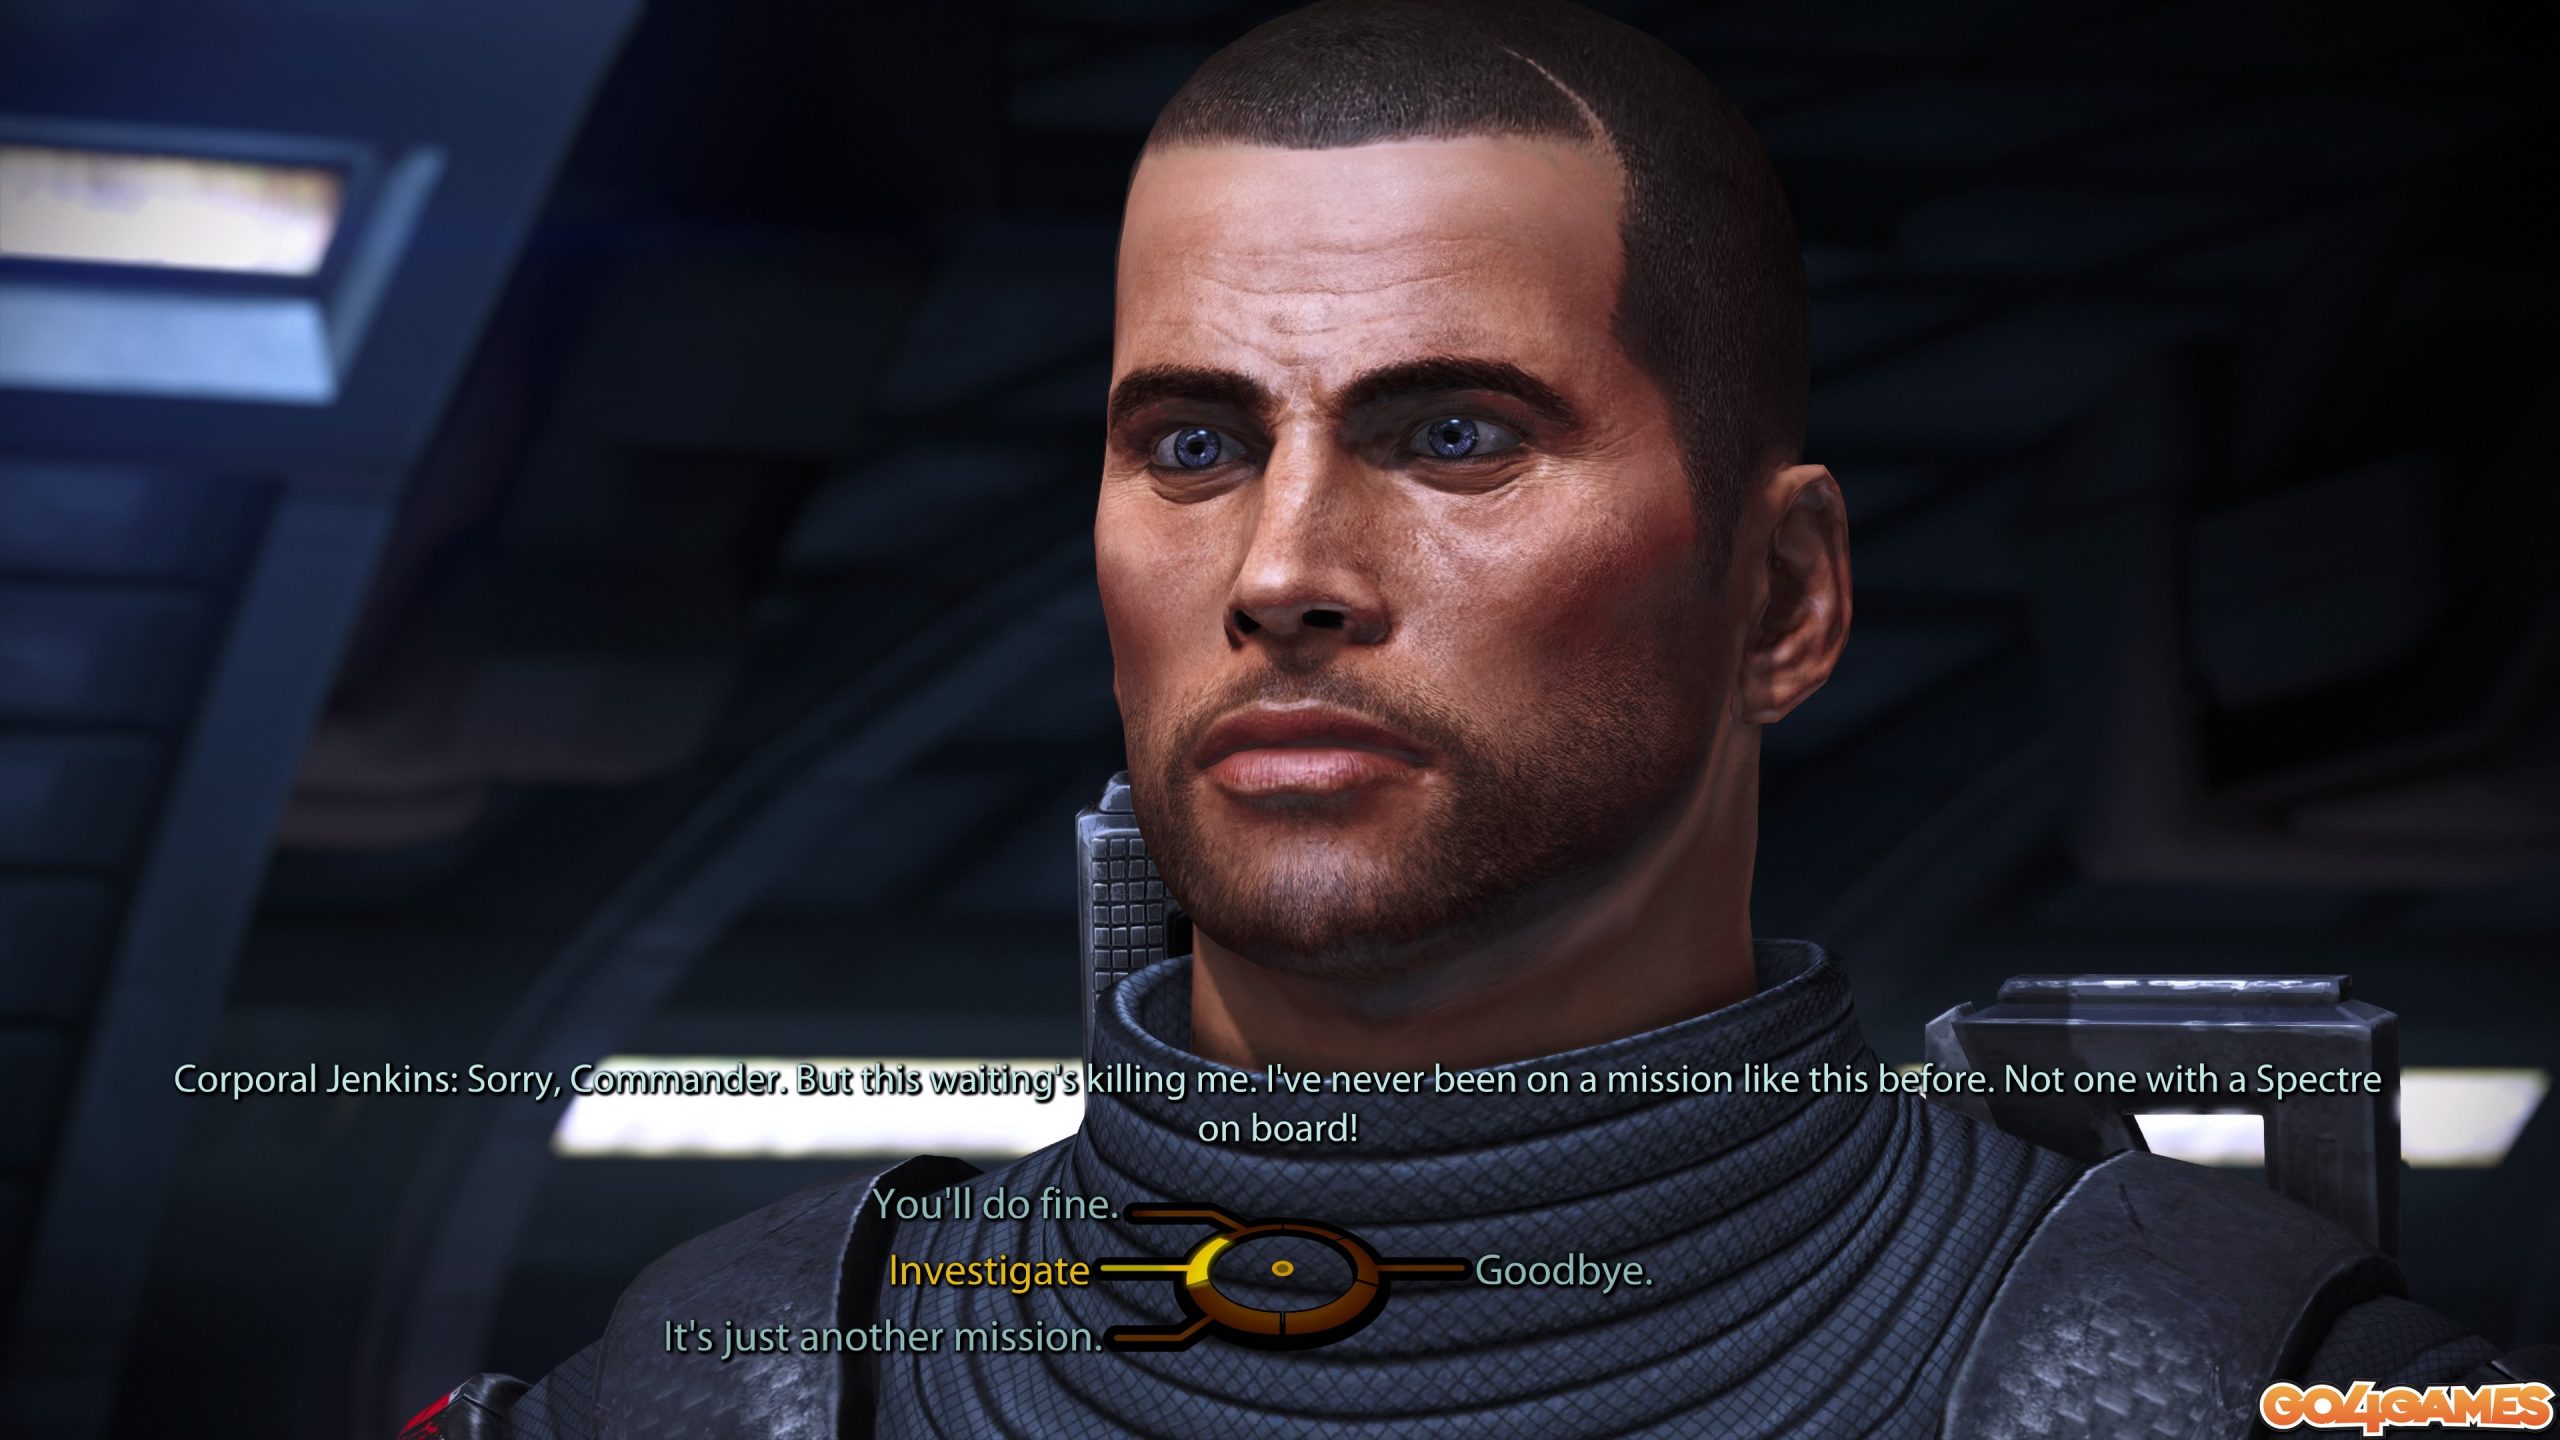 Mass Effect Legendary